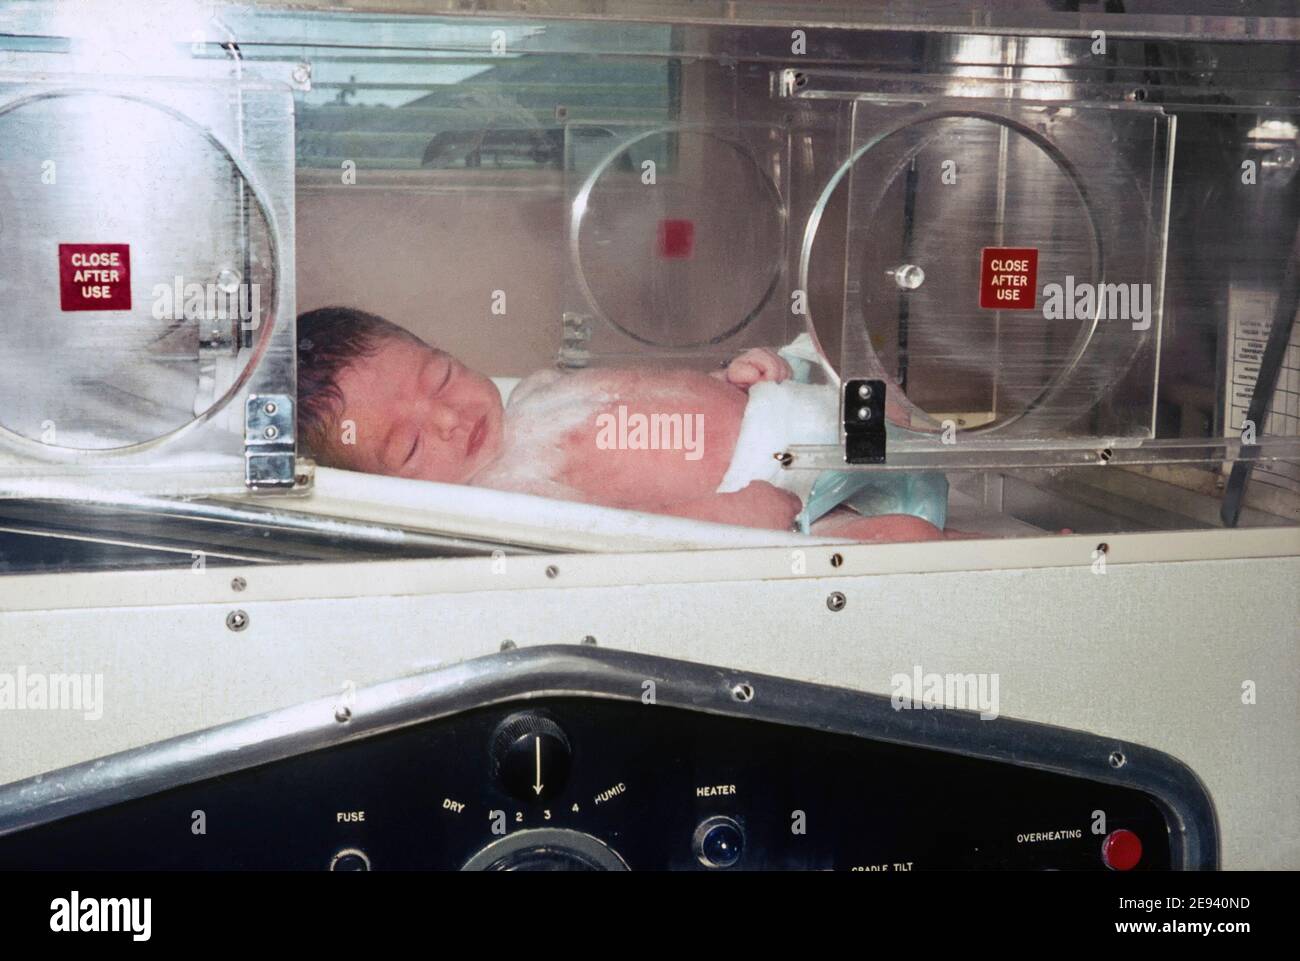 Historisches Archiv 1960s NHS Entbindungsklinik neu geboren geringes Gewicht Vorzeitiges Baby in Fachabteilung Ansicht innerhalb Inkubator drei Wochen Nach der Geburt Archivbild so wie wir waren in 60s Essex England Großbritannien Stockfoto